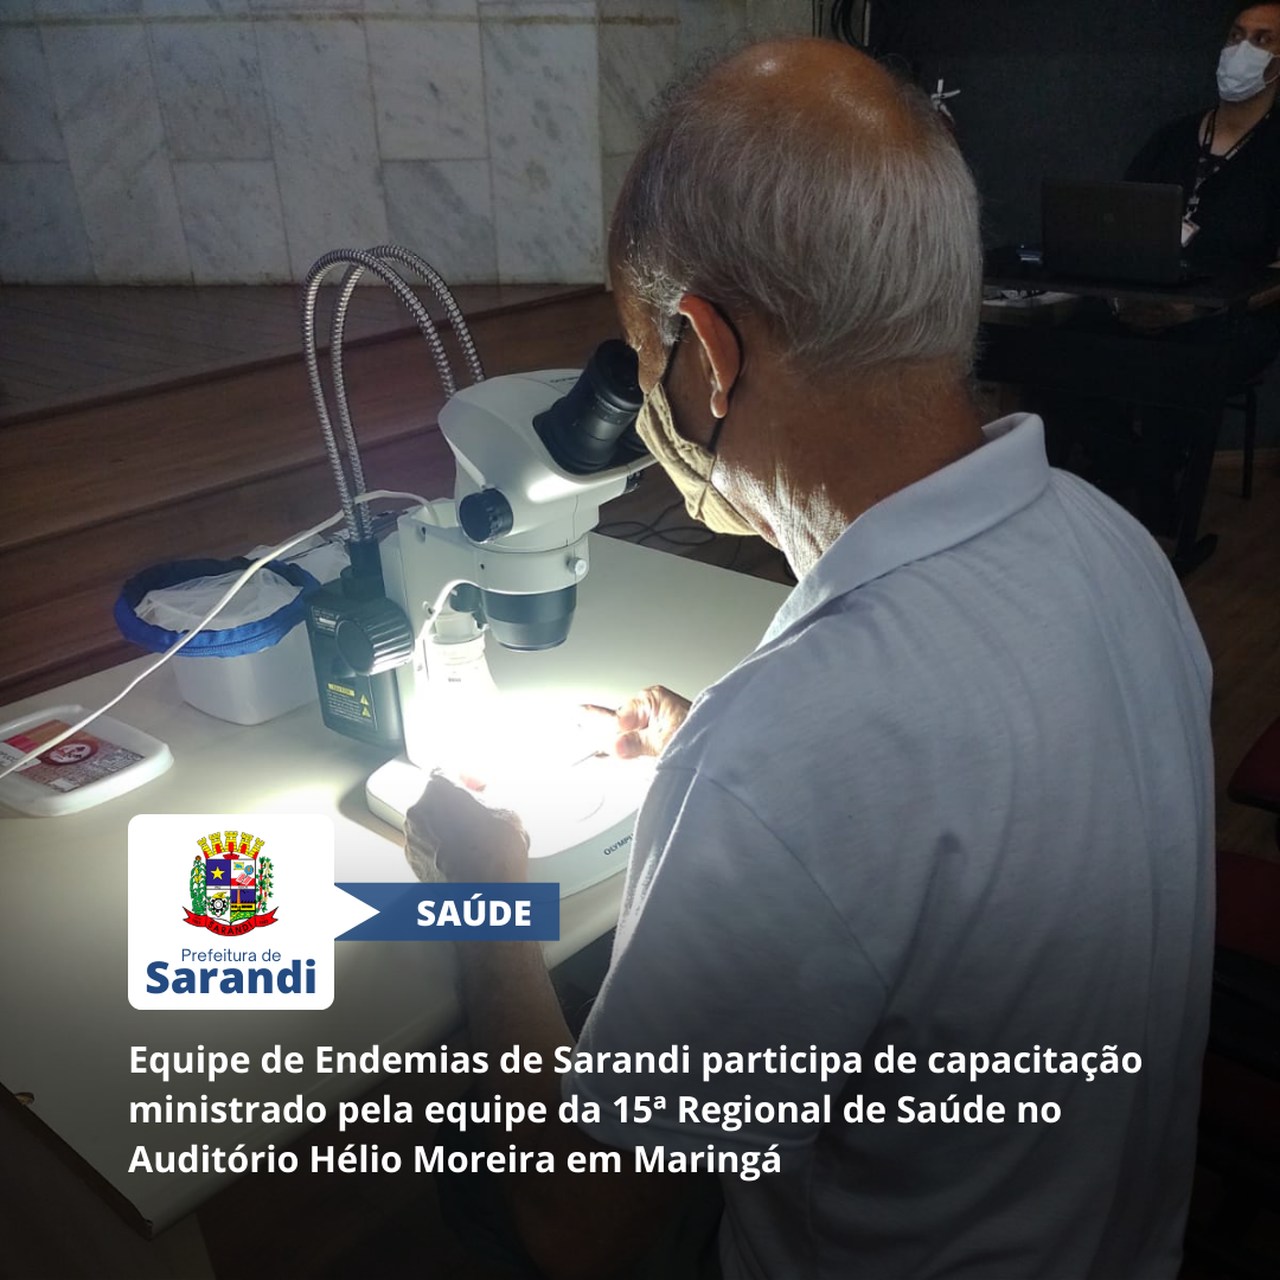 Equipe de Endemias de Sarandi participa de capacitação ministrado pela equipe da da 15ª Regional de Saúde no Auditório Hélio Moreira em Maringá